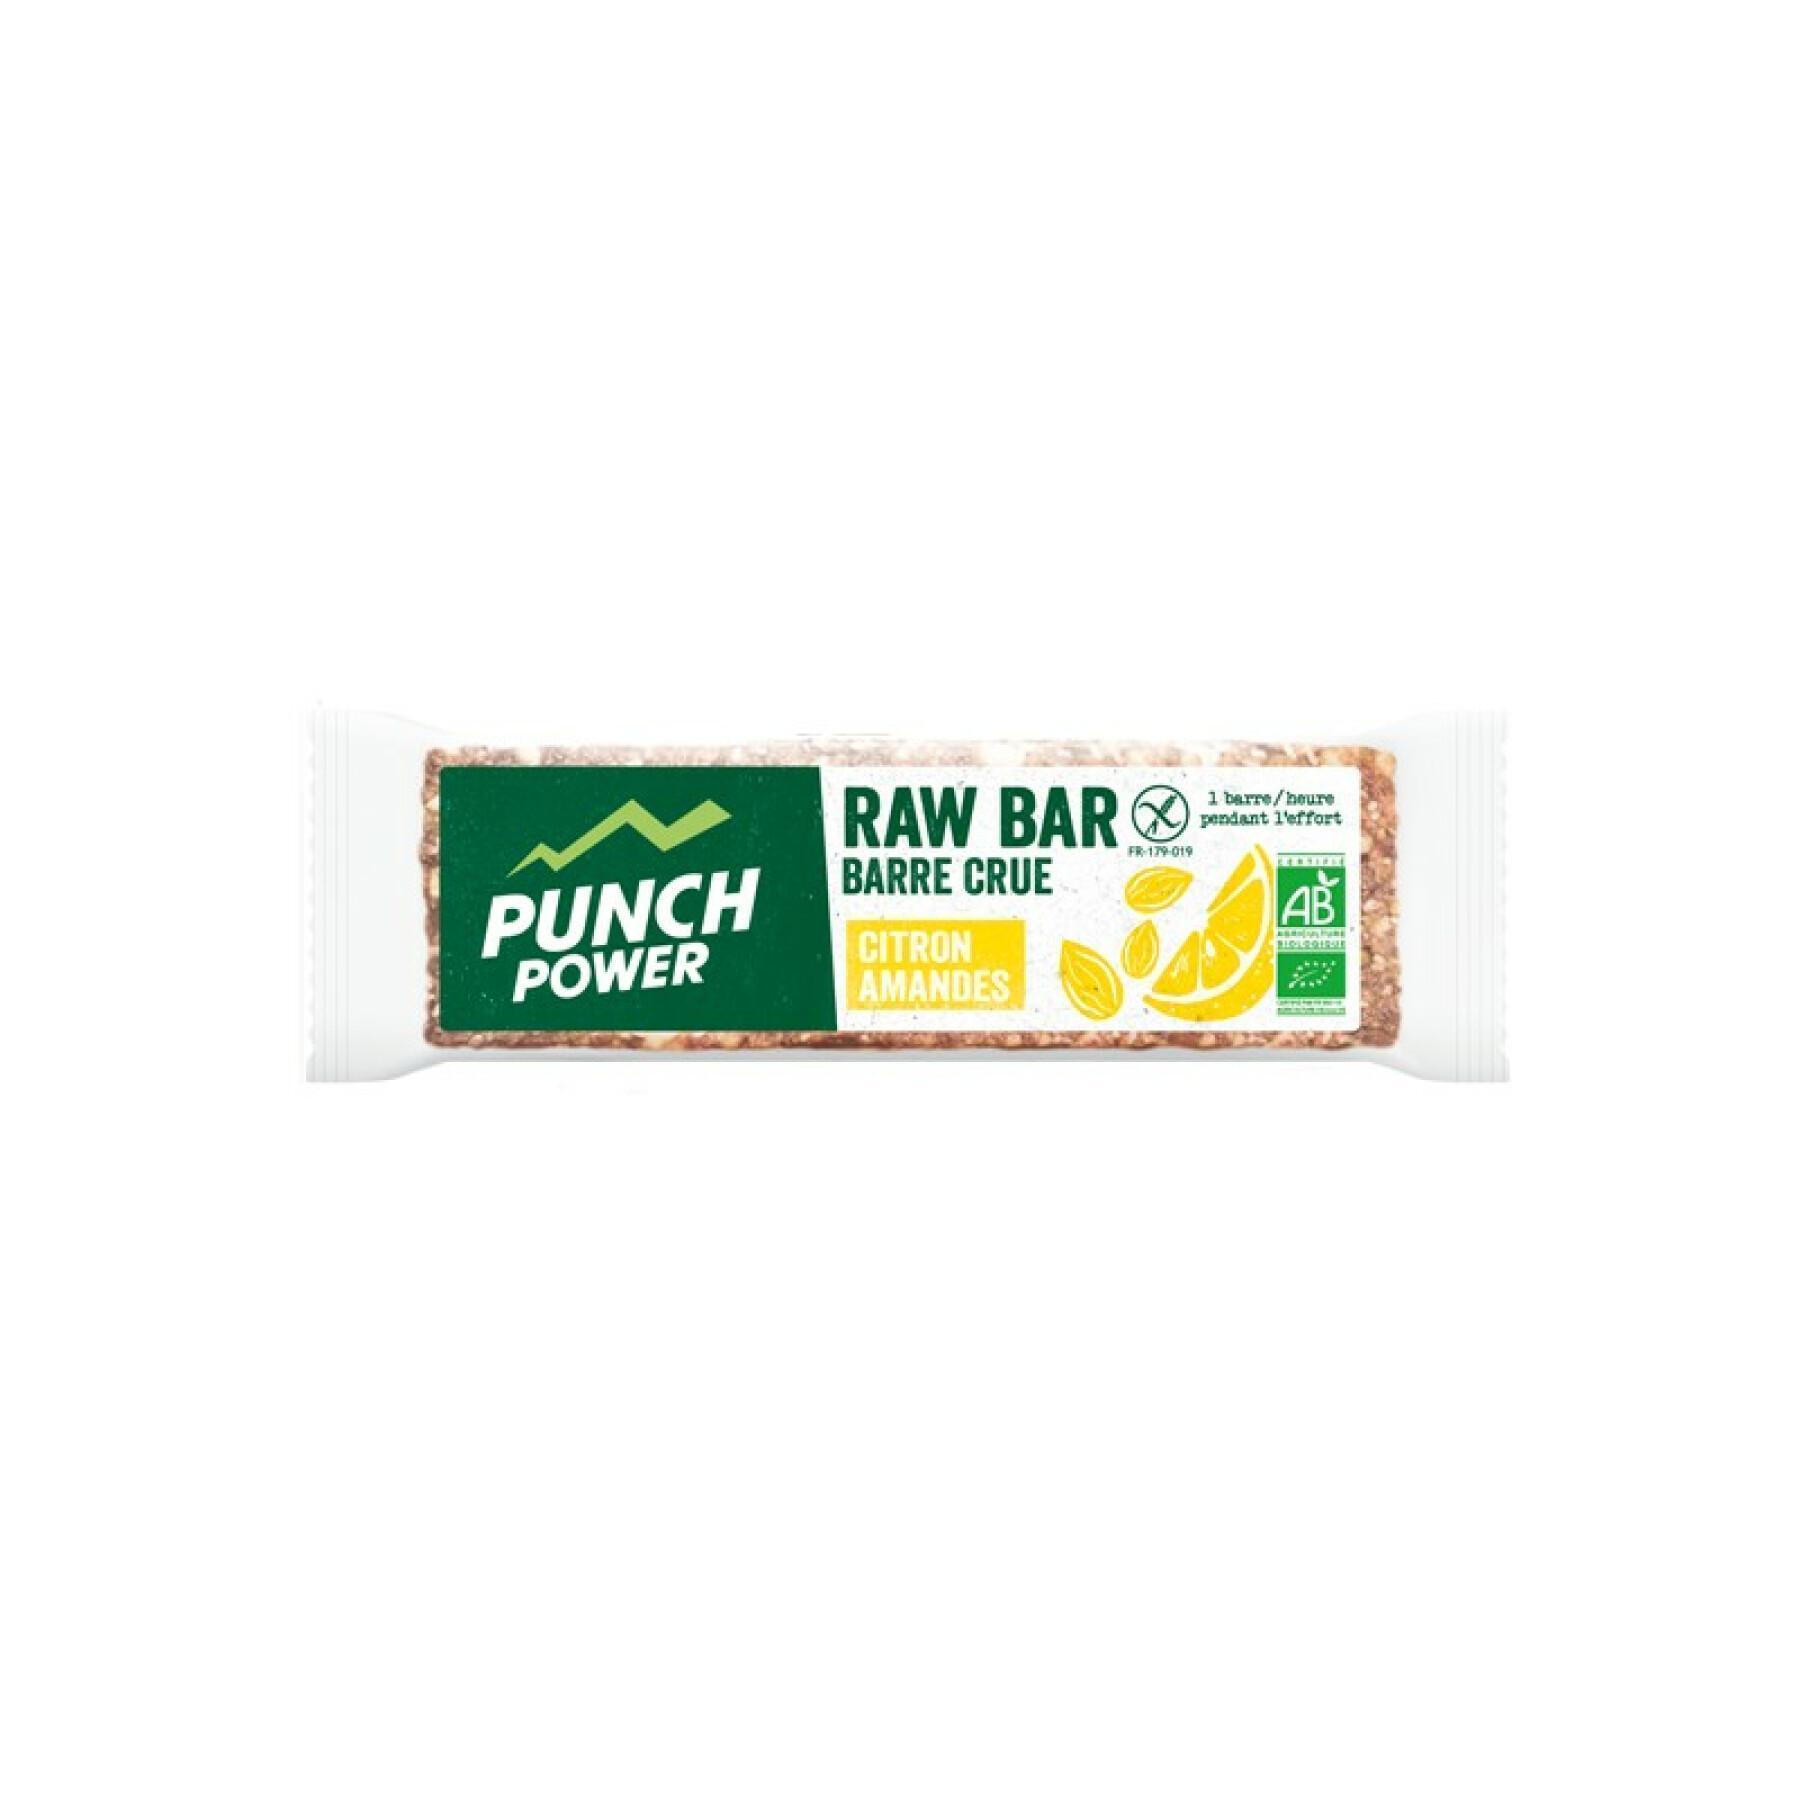 Wyświetlanie 20 pasków energii Punch Power Rawbar Citron amande